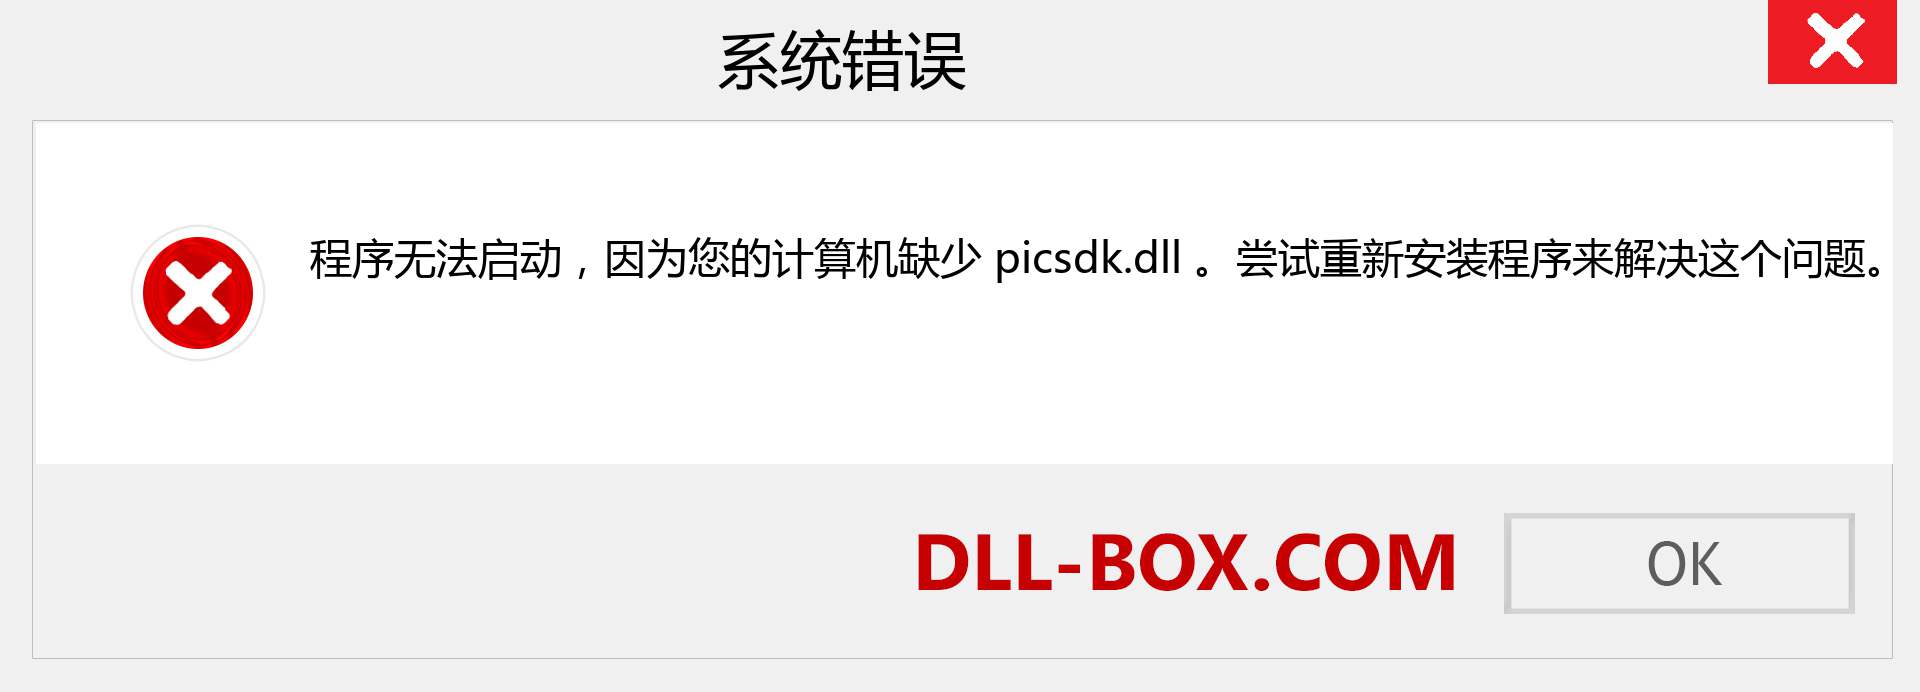 picsdk.dll 文件丢失？。 适用于 Windows 7、8、10 的下载 - 修复 Windows、照片、图像上的 picsdk dll 丢失错误